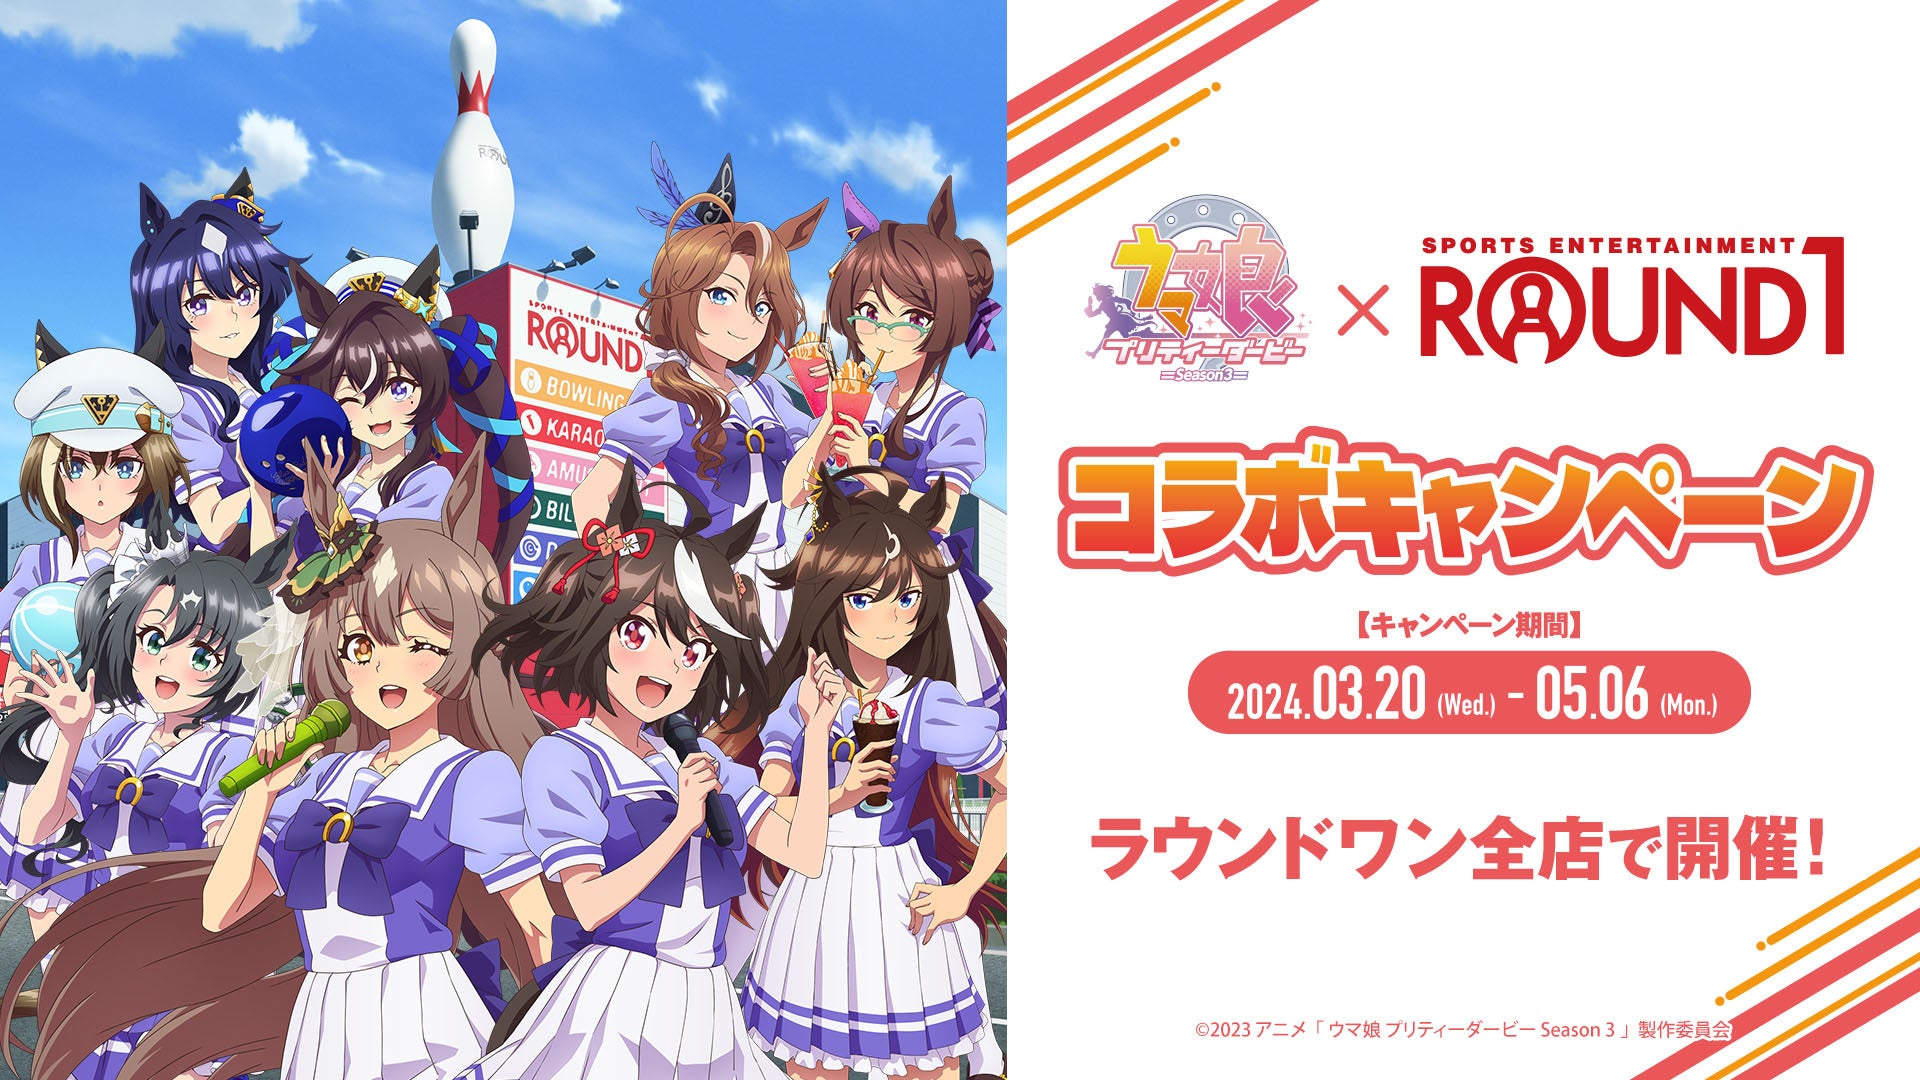 TVアニメ『ウマ娘 プリティーダービー Season 3』と「ROUND1」のコラボキャンペーンが開催決定！